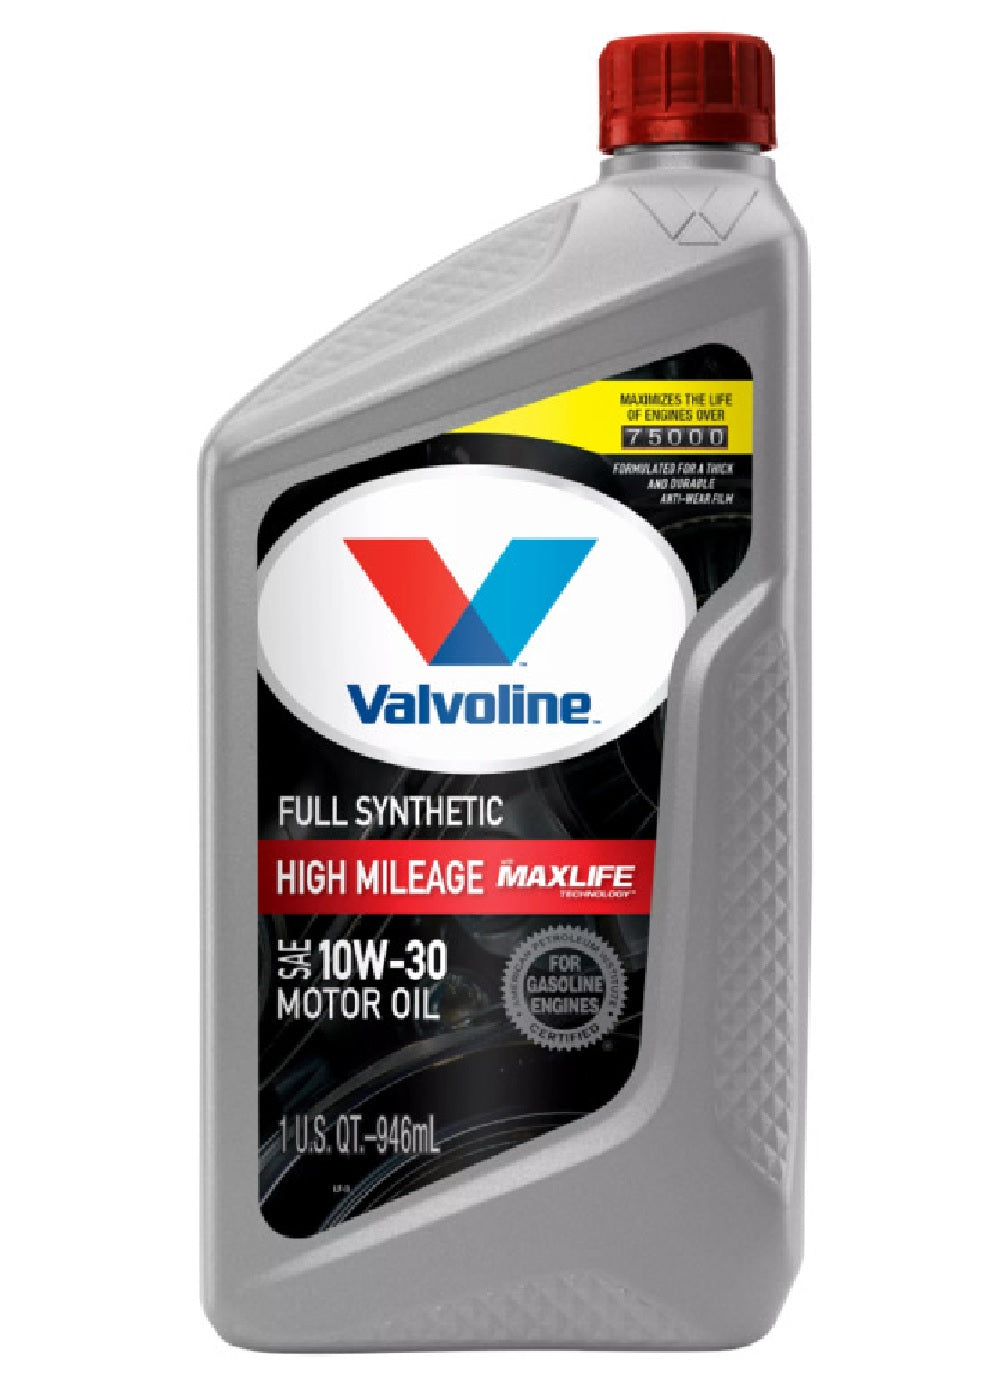 Valvoline VV180 10W30 Full Synthetic High Mileage Motor Oil, 1 Quart